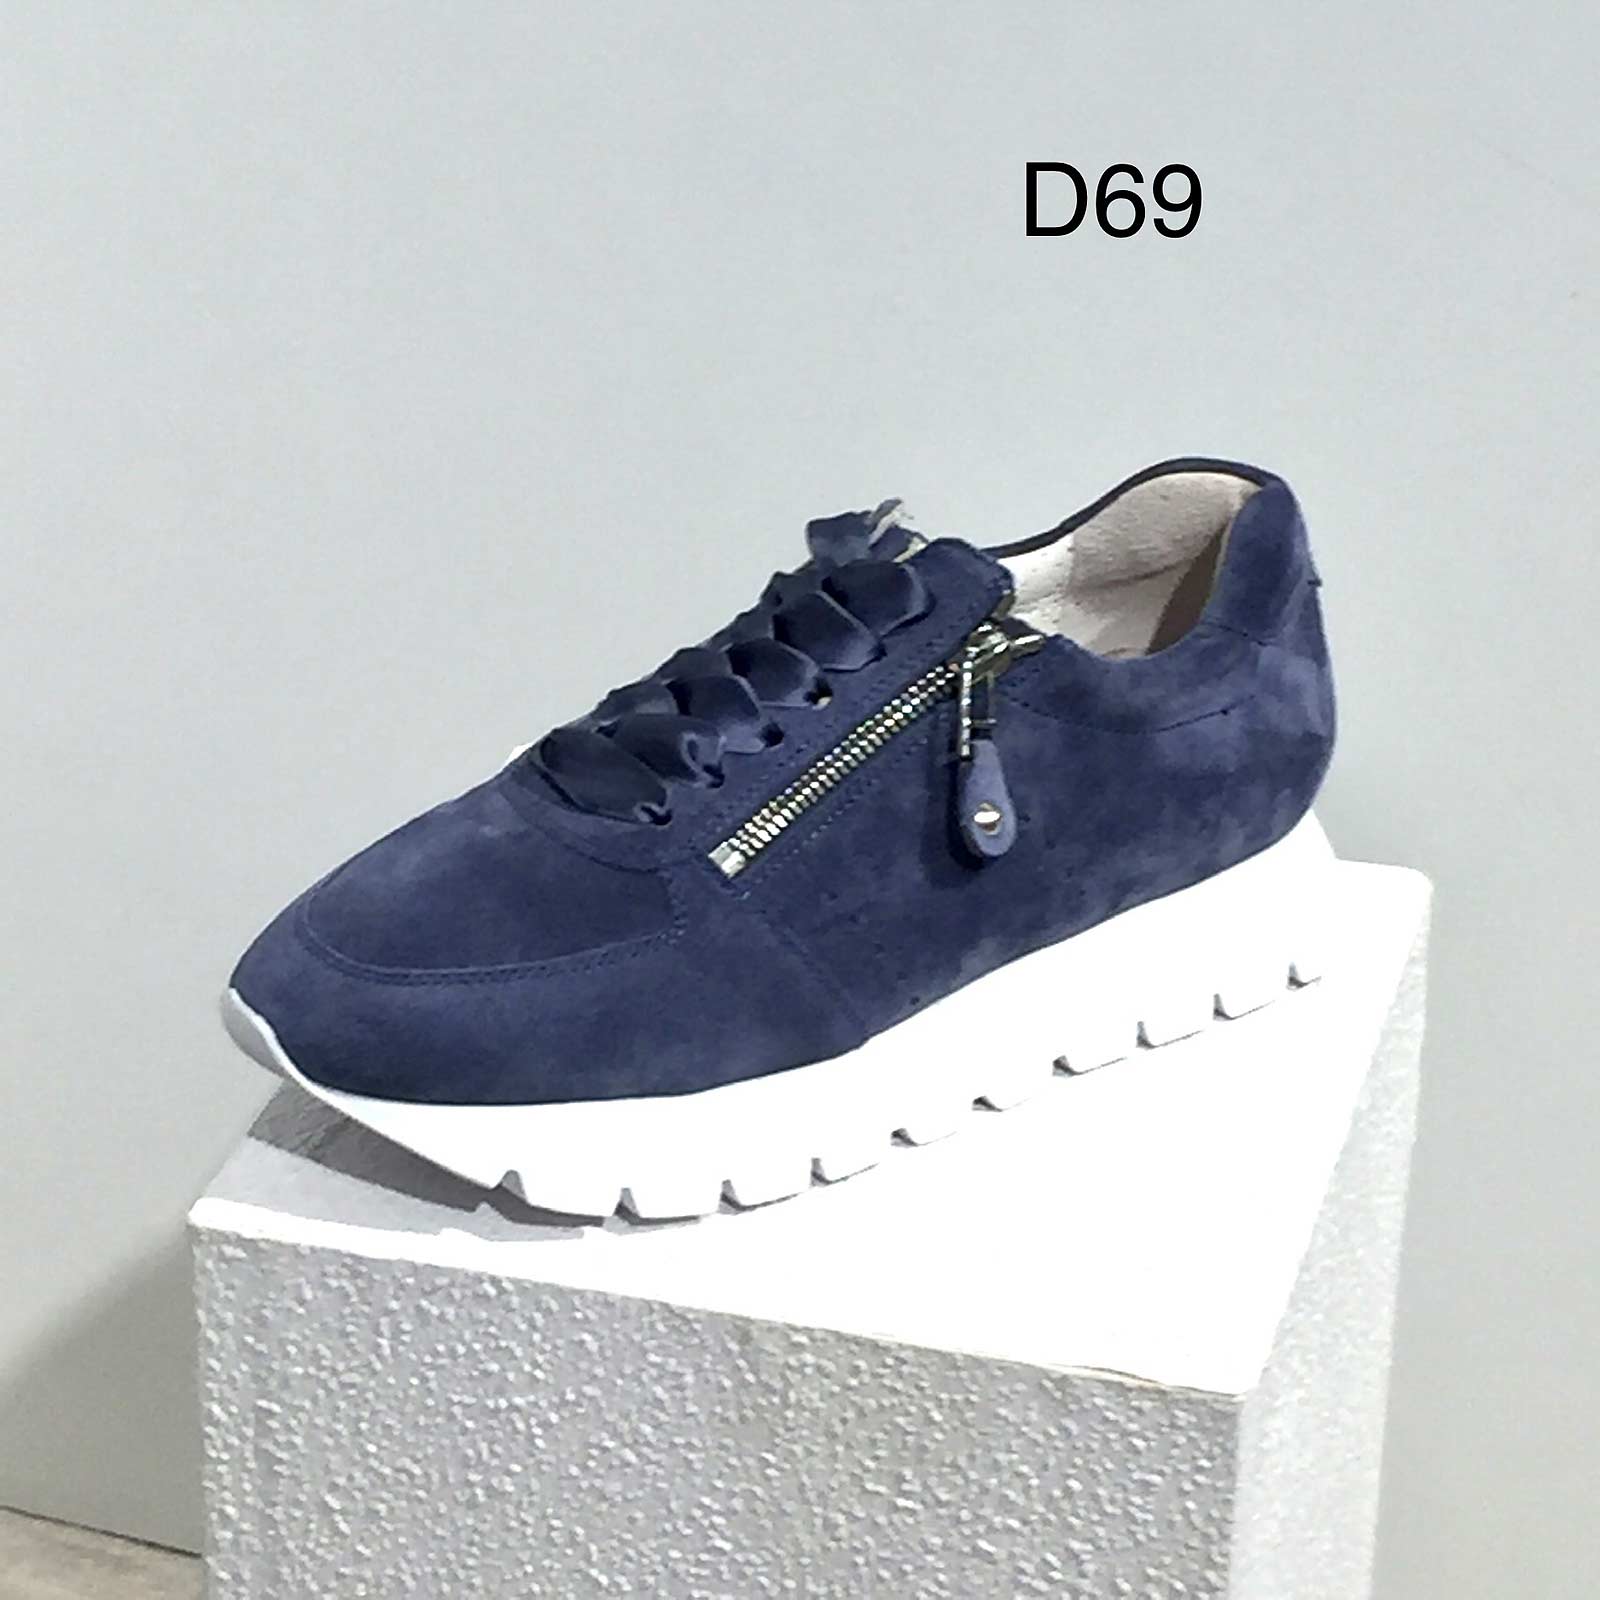 D69 - Sneaker von Kennel & Schmenger, indigoblau